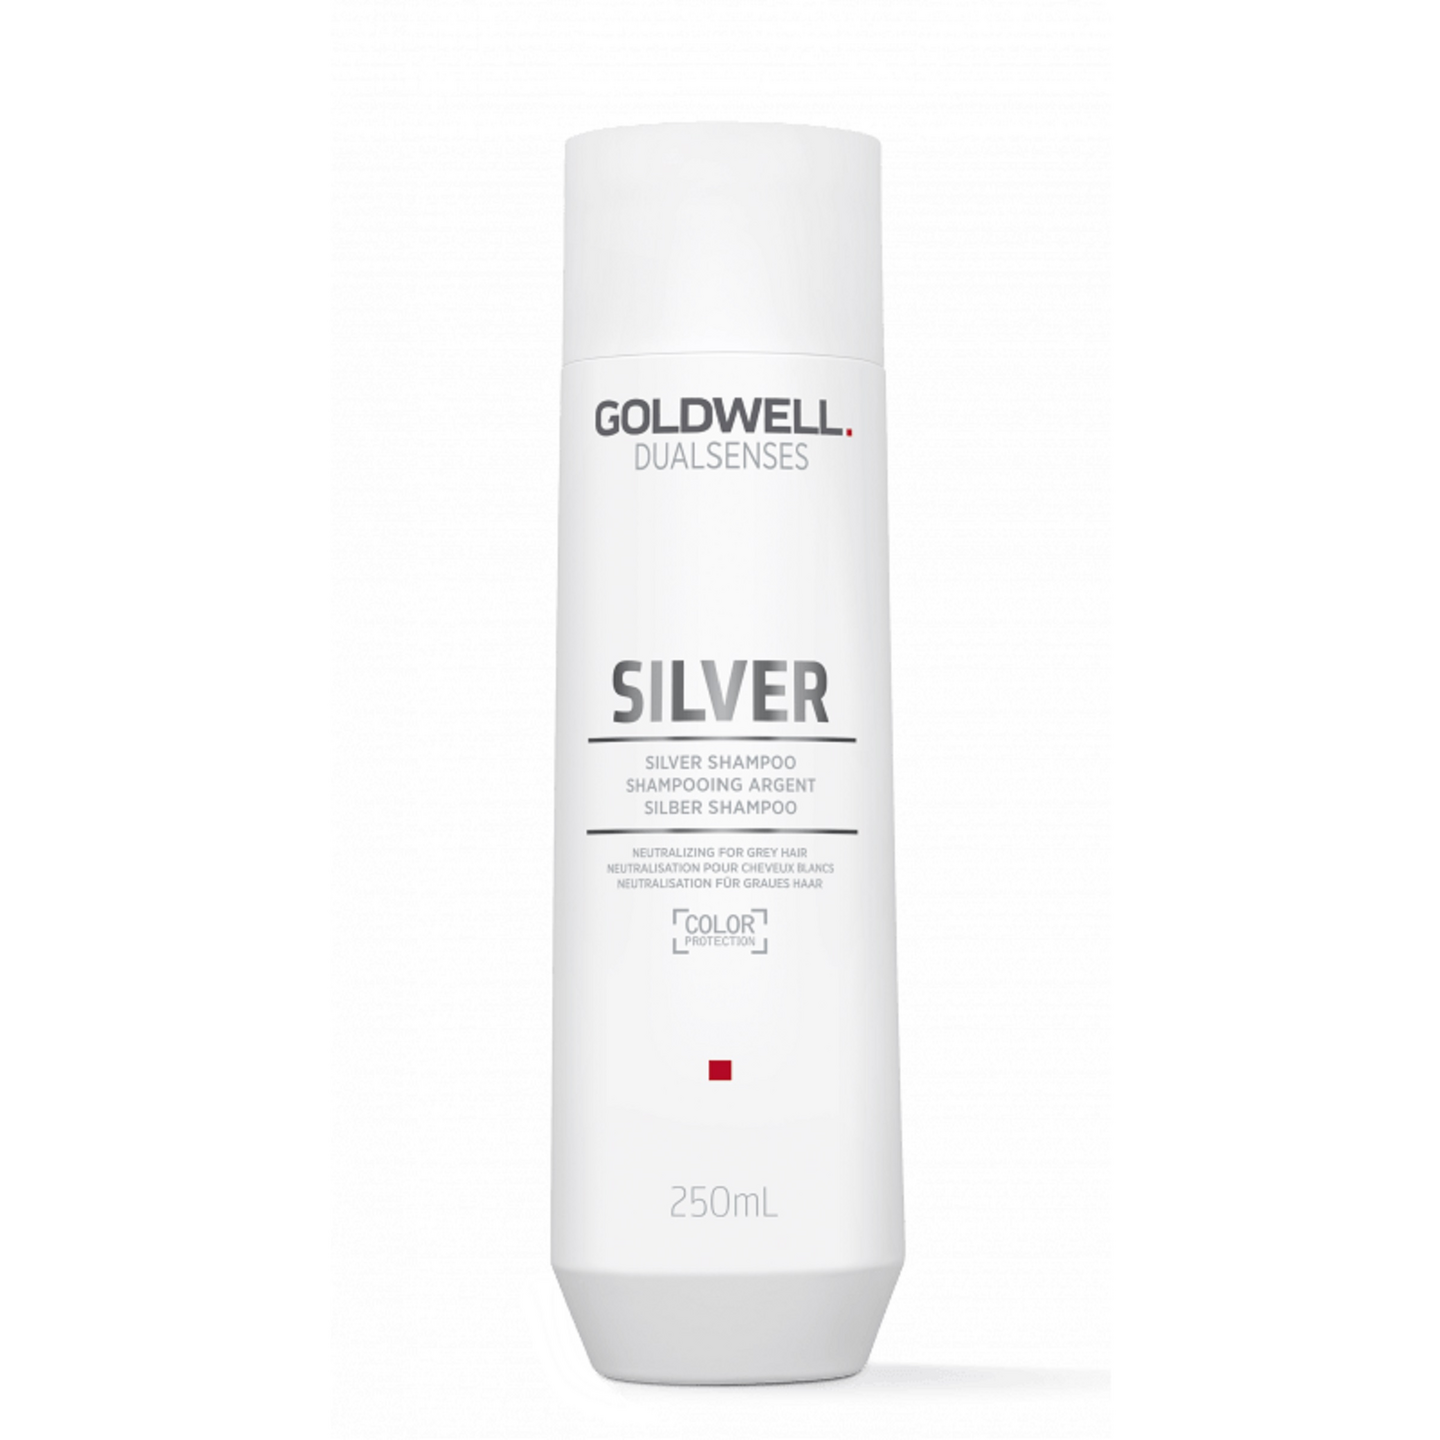 Goldwell Dualsenses shampoo 250ml Silver